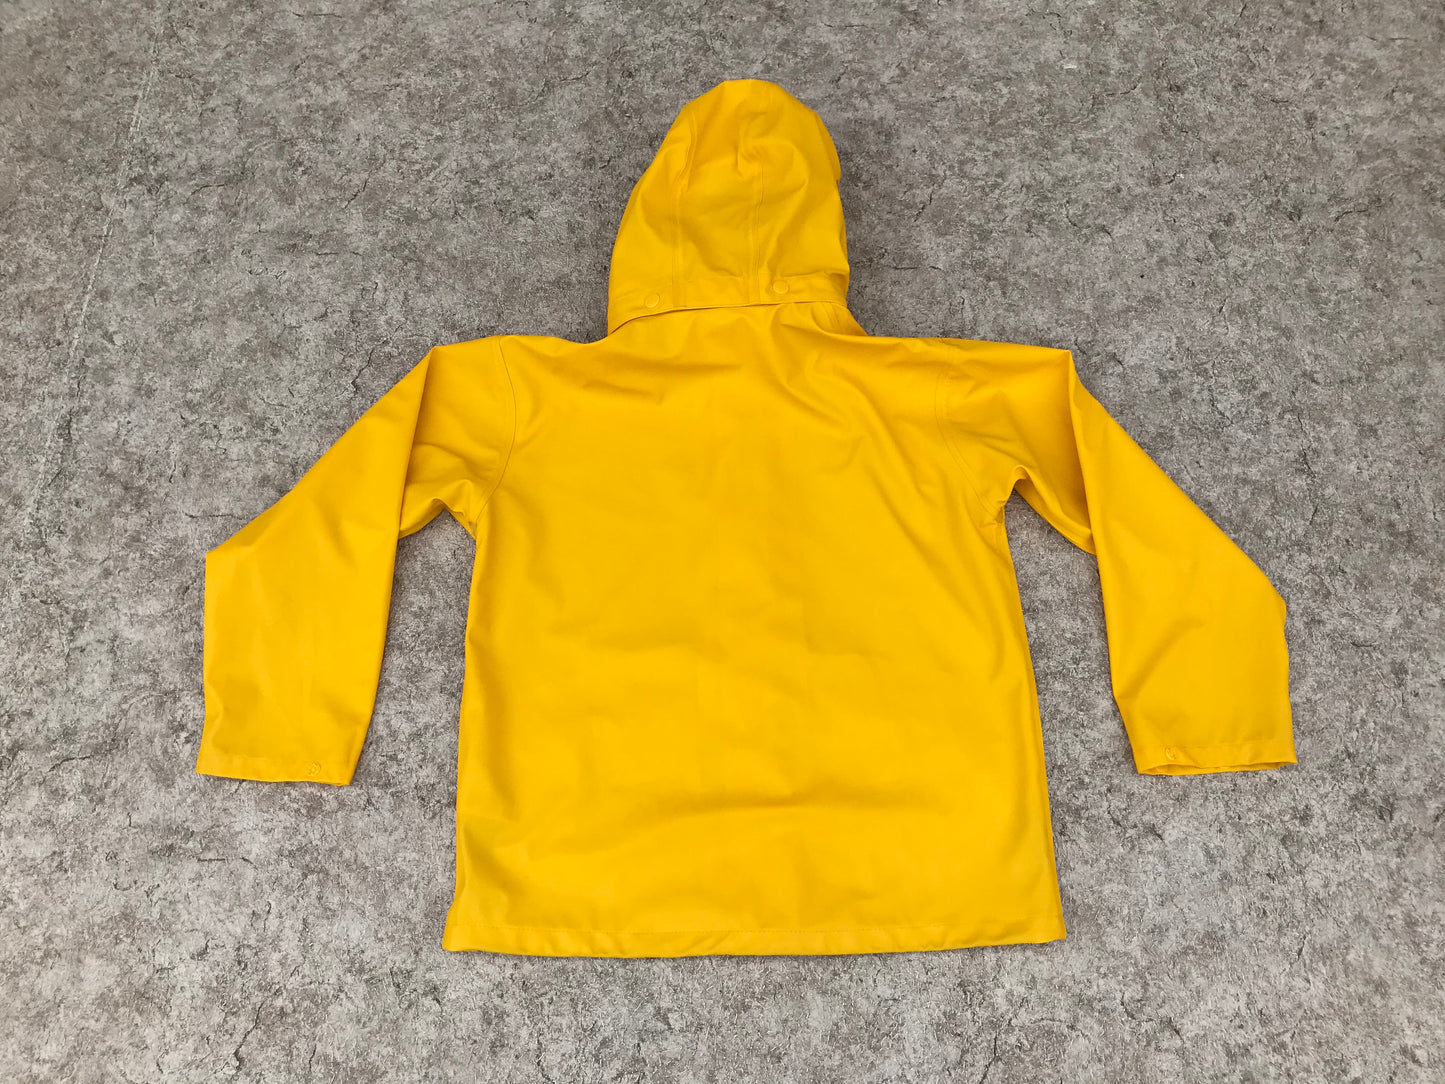 Rain Coat Child Size 12 Helly Hansen Waterproof Yellow Excellent